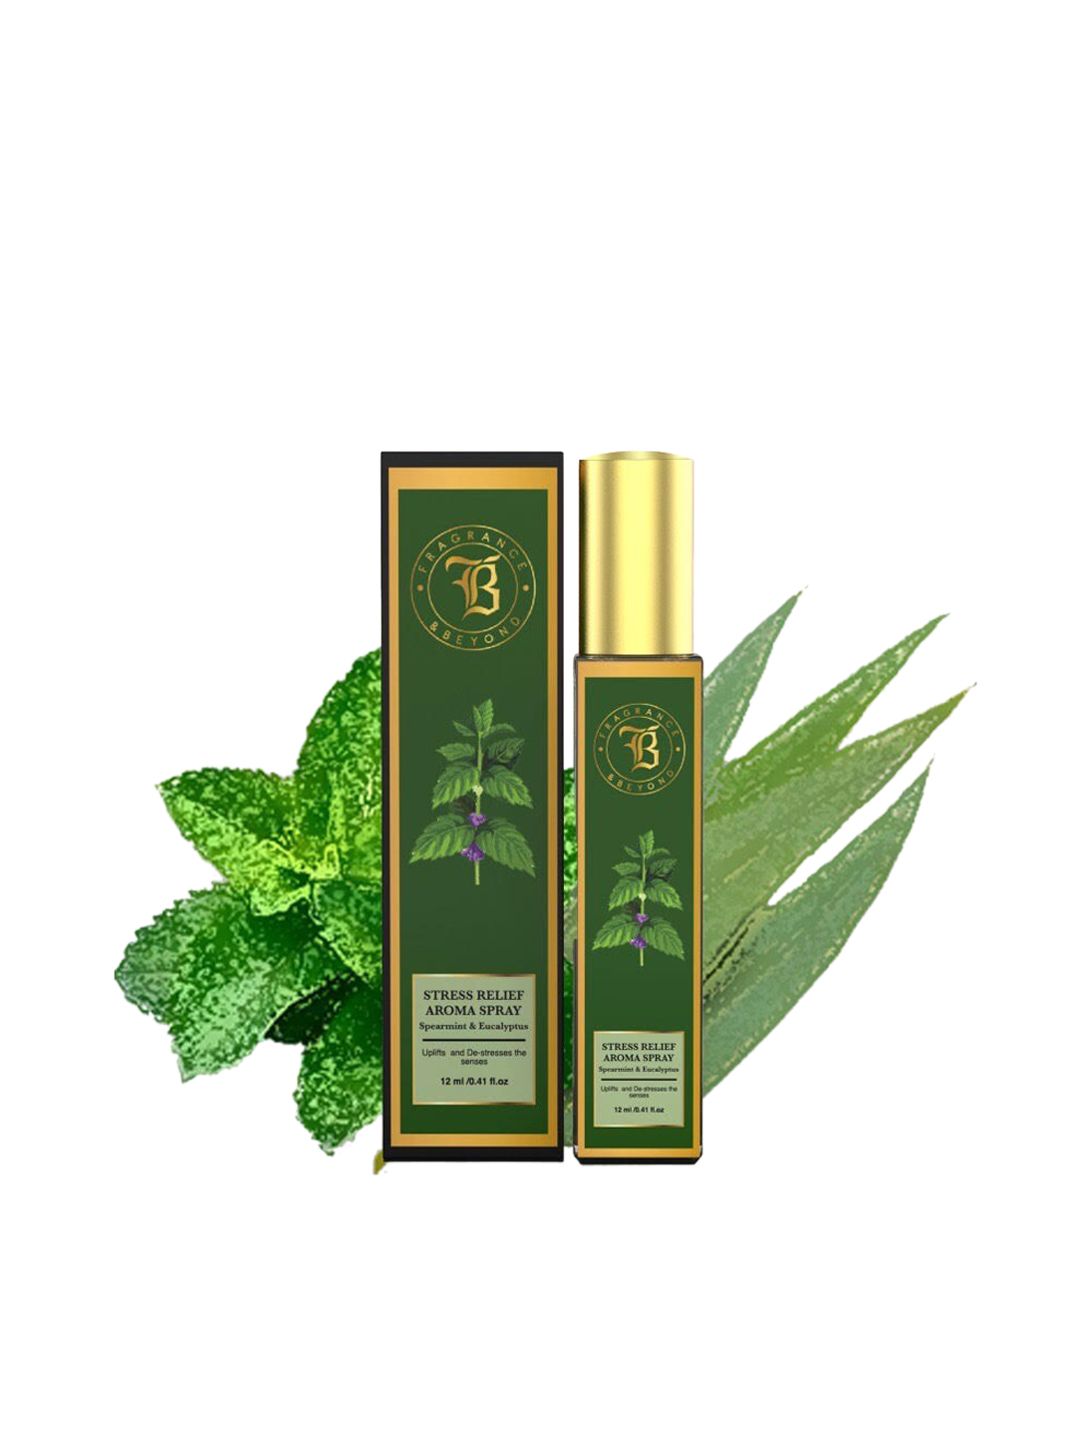 Fragrance & Beyond Aromatherapy Spearmint & Eucalyptus Stress Relief Aroma Spray 12ml Price in India